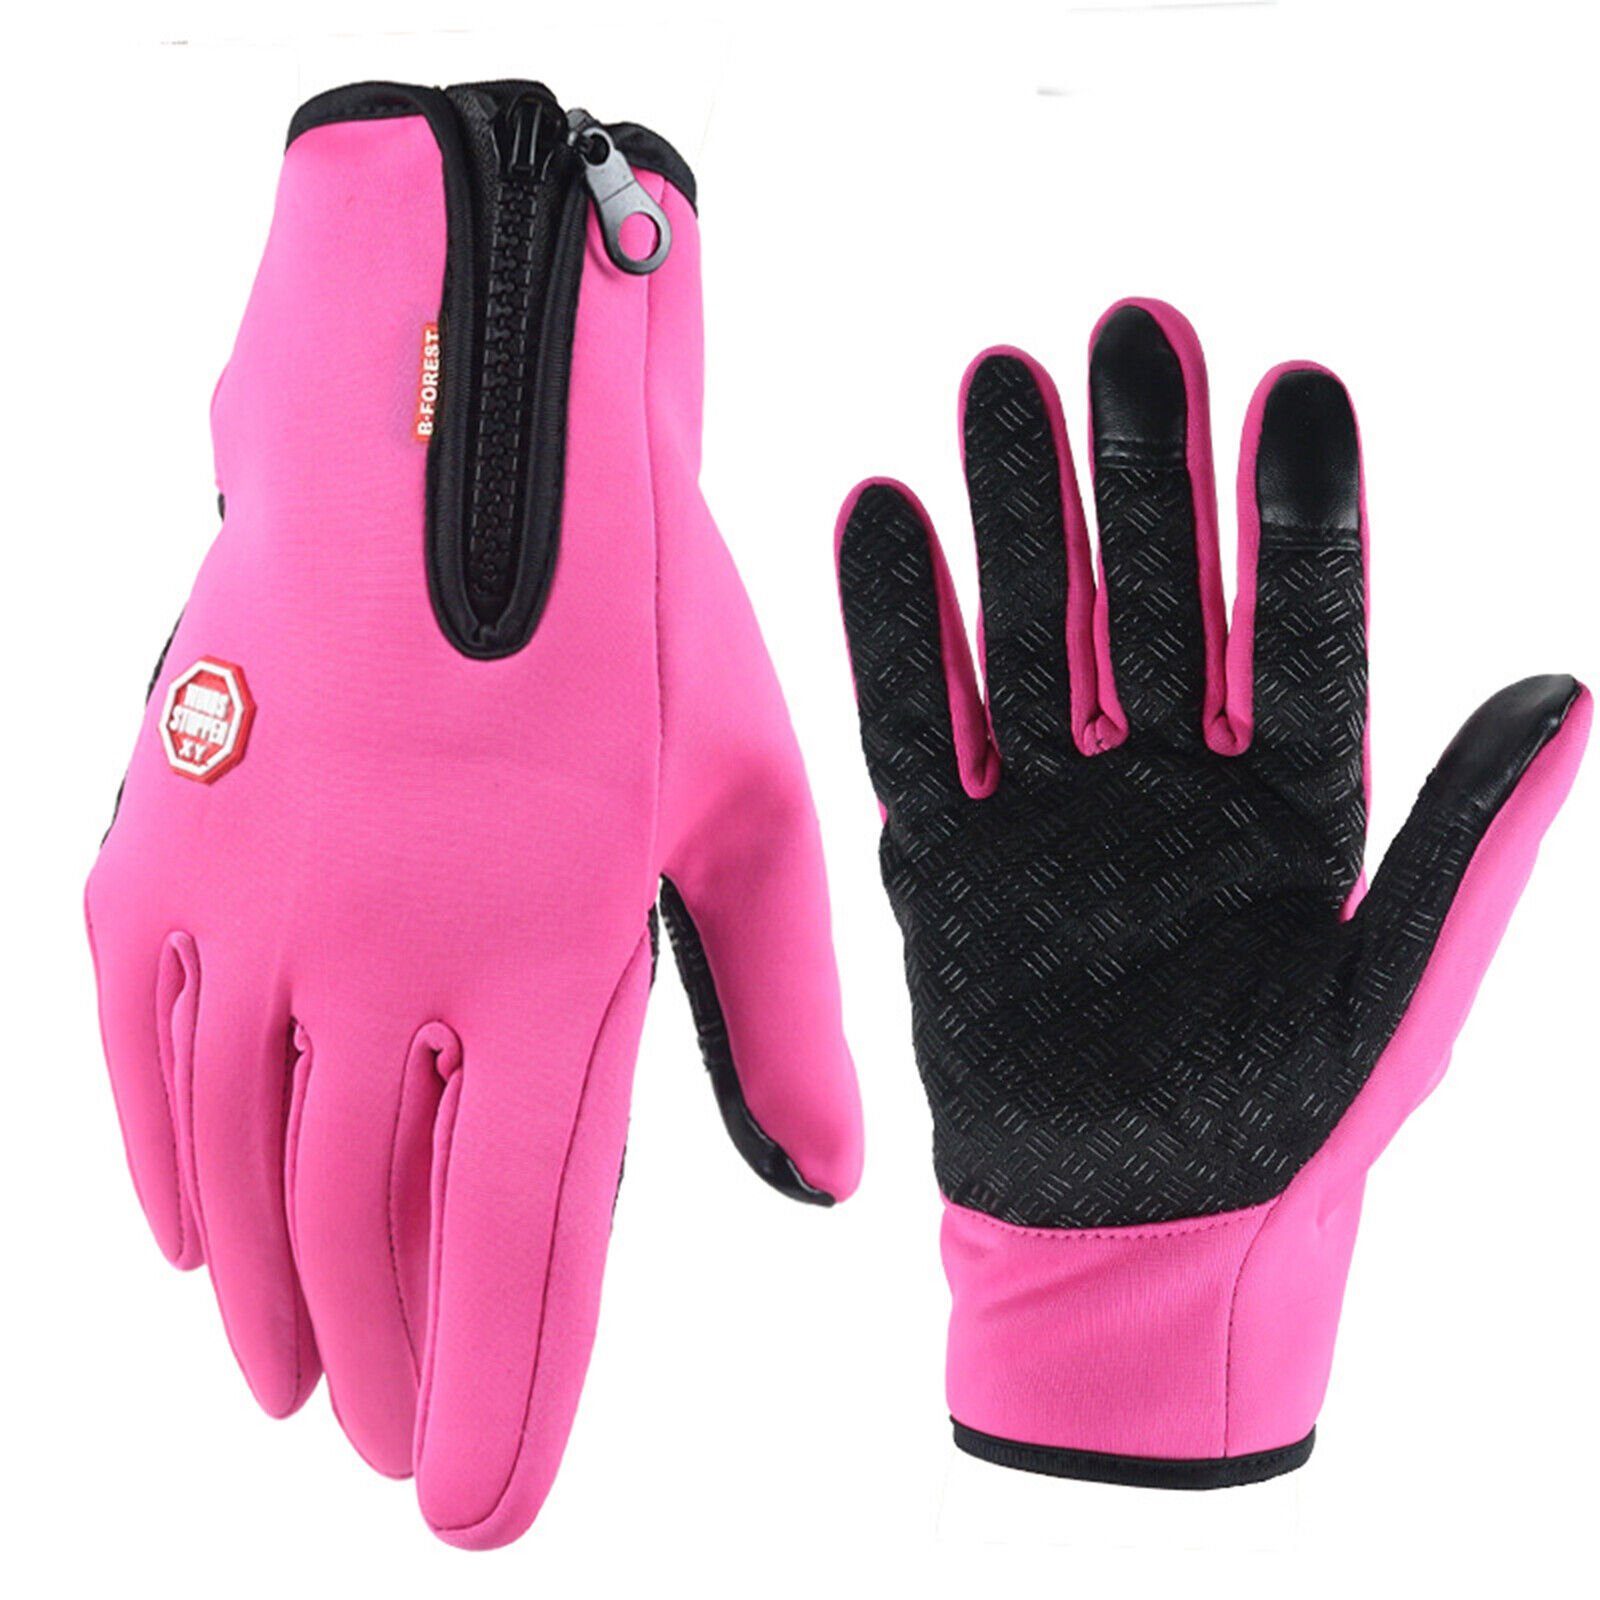 Alster Herz Fahrrad in Design, A0001 bequem, ganzjährig, atmungsaktiv Pink Handschuhe leicht Touchscreen, Fahrradhandschuhe sportlichem